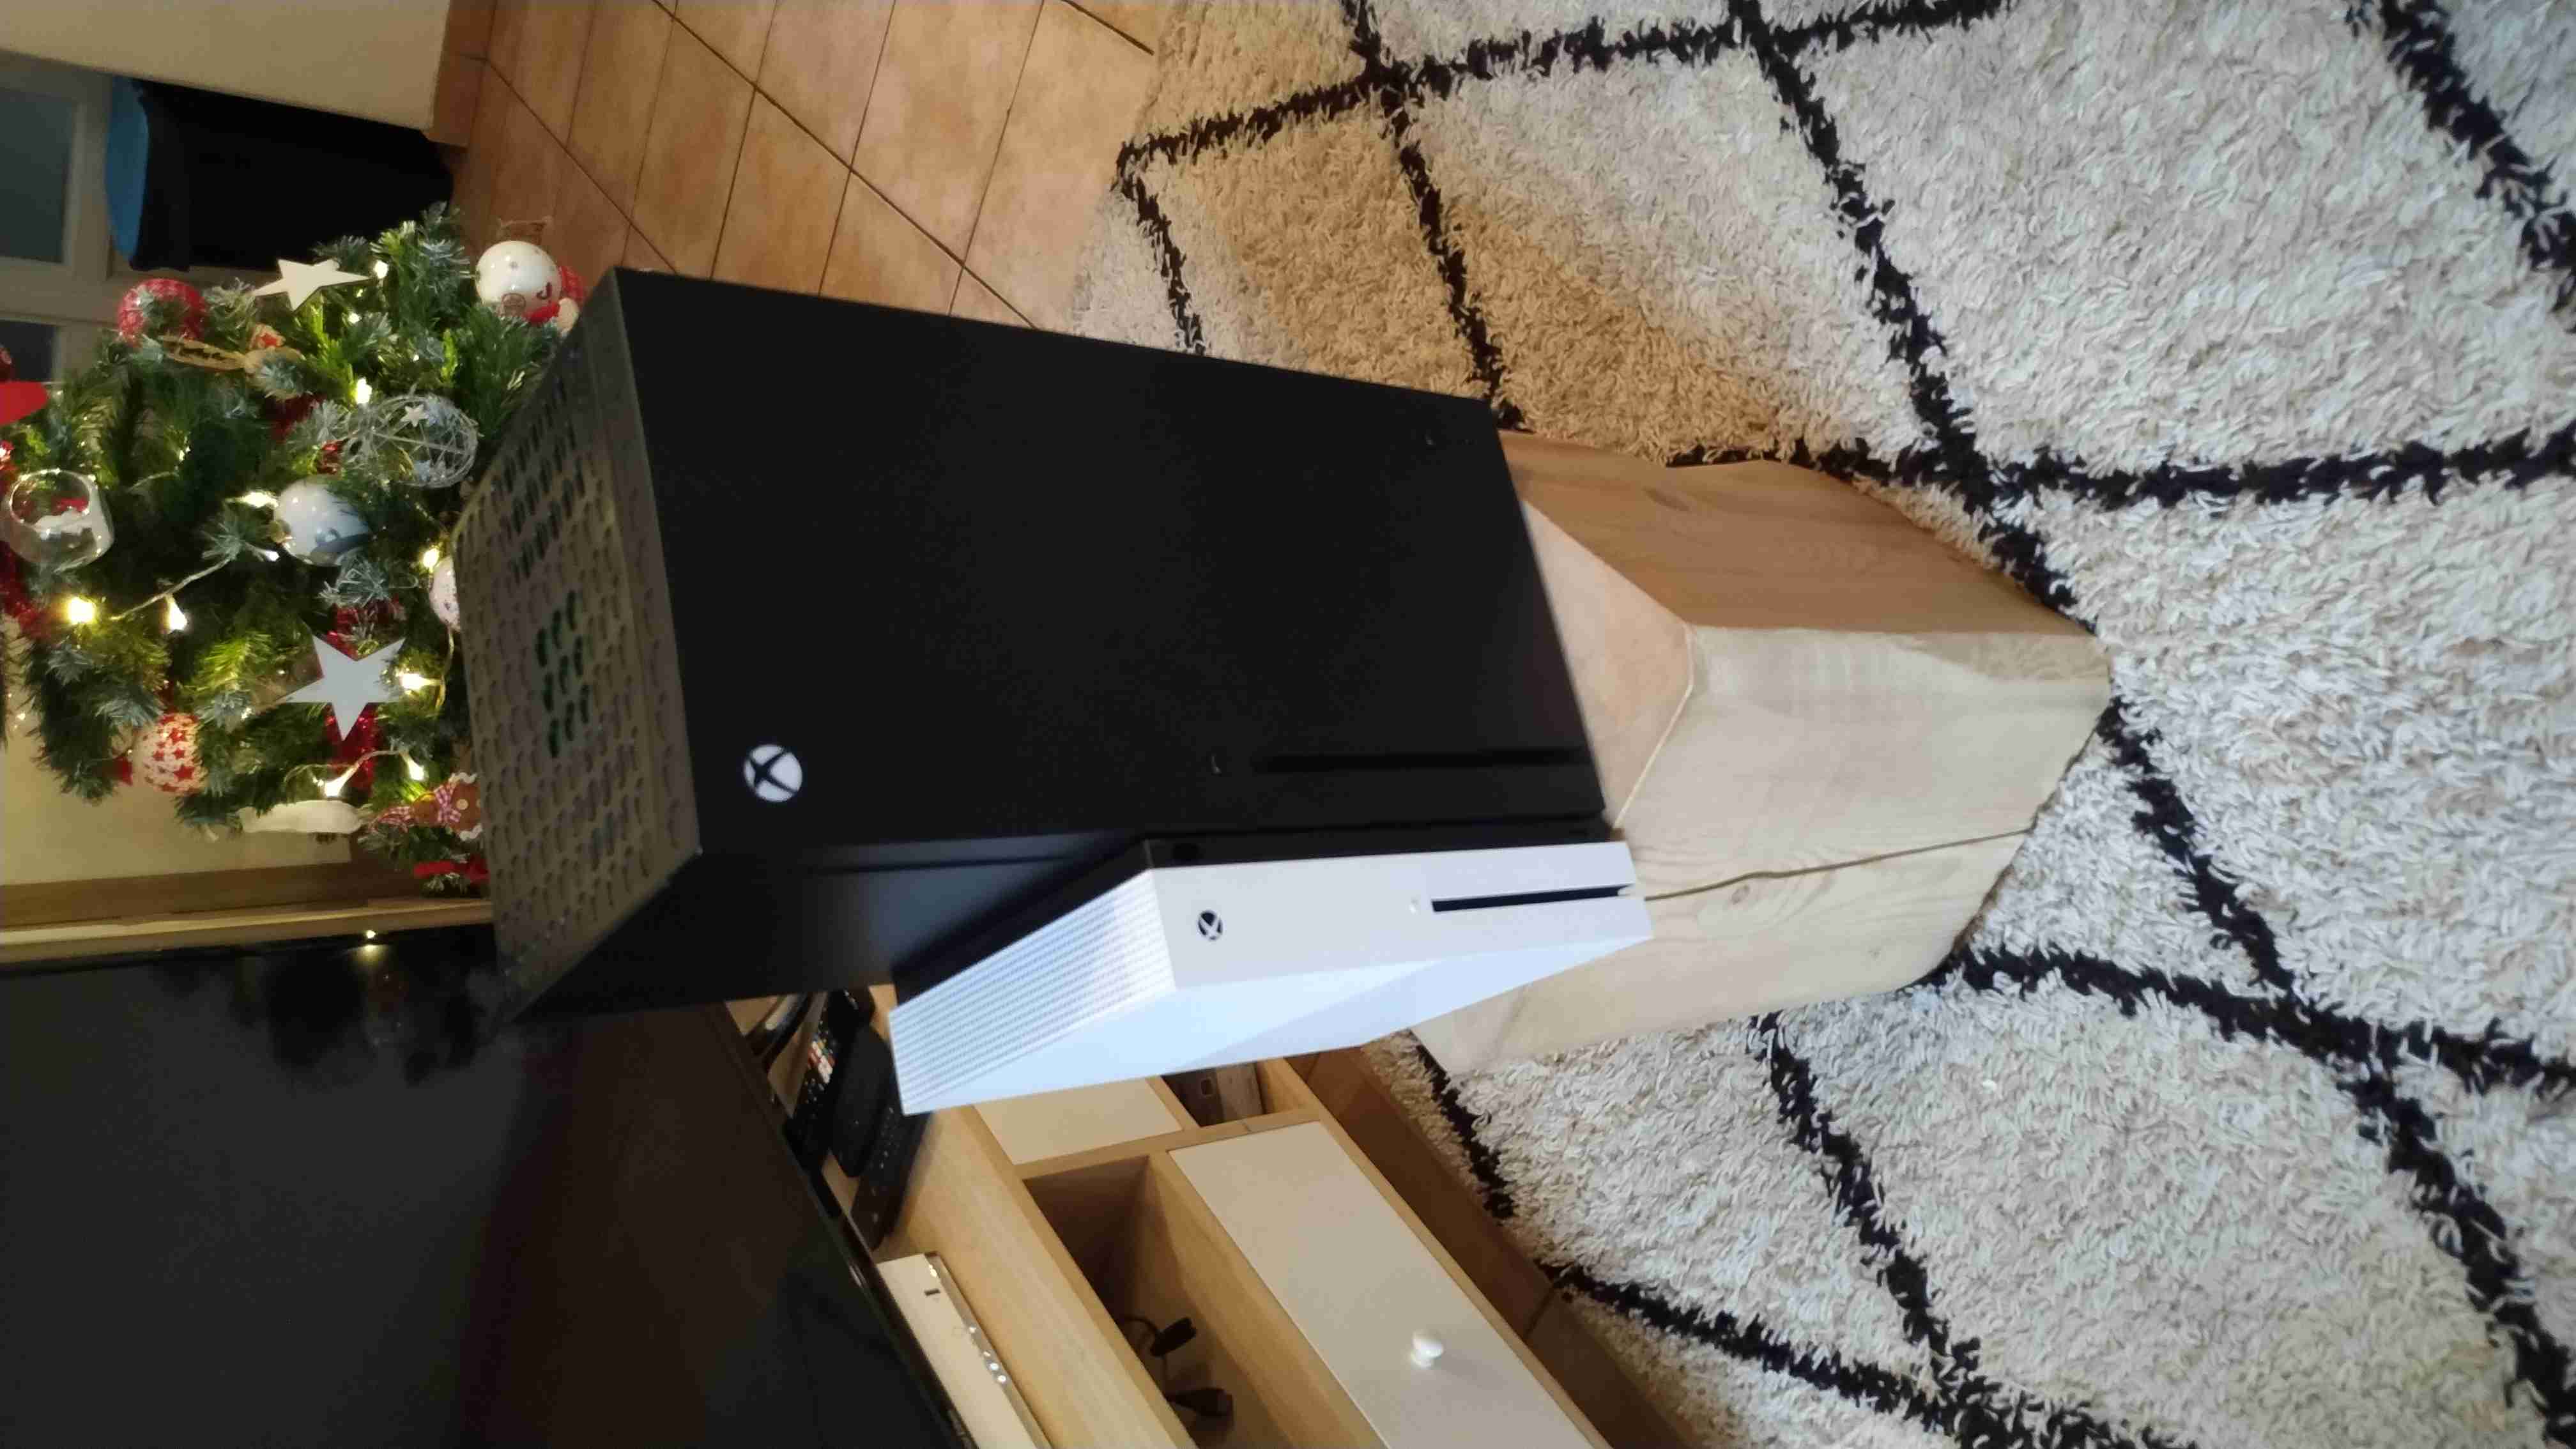 Unboxing Frigo Xbox Series X : déballage et intérieur de l